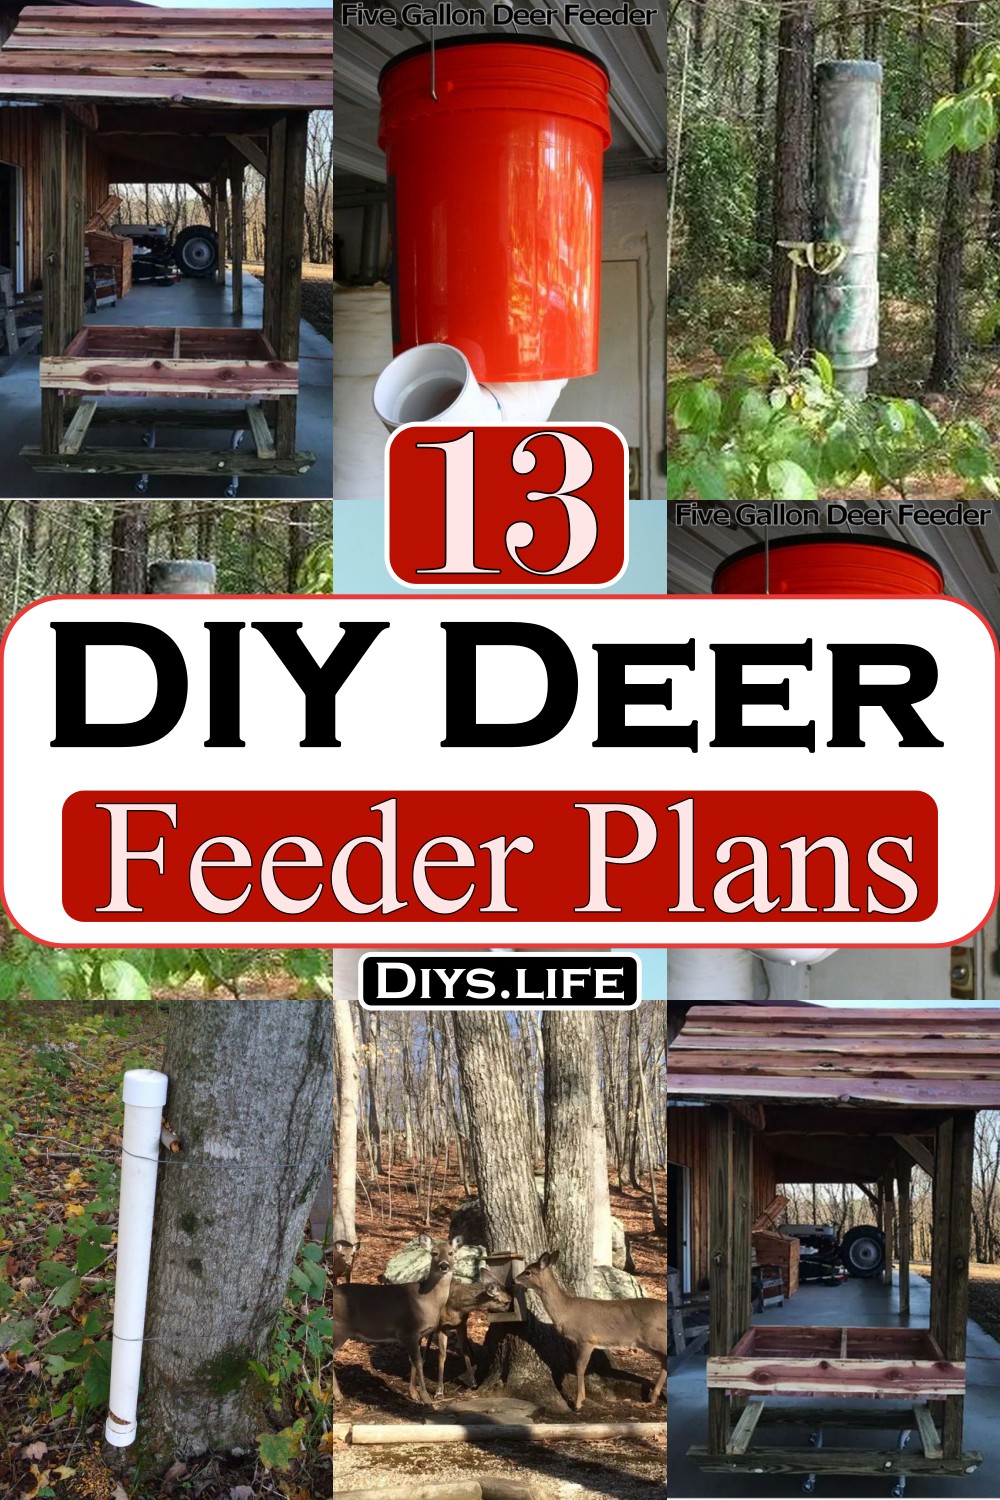 DIY Deer Feeder Plans